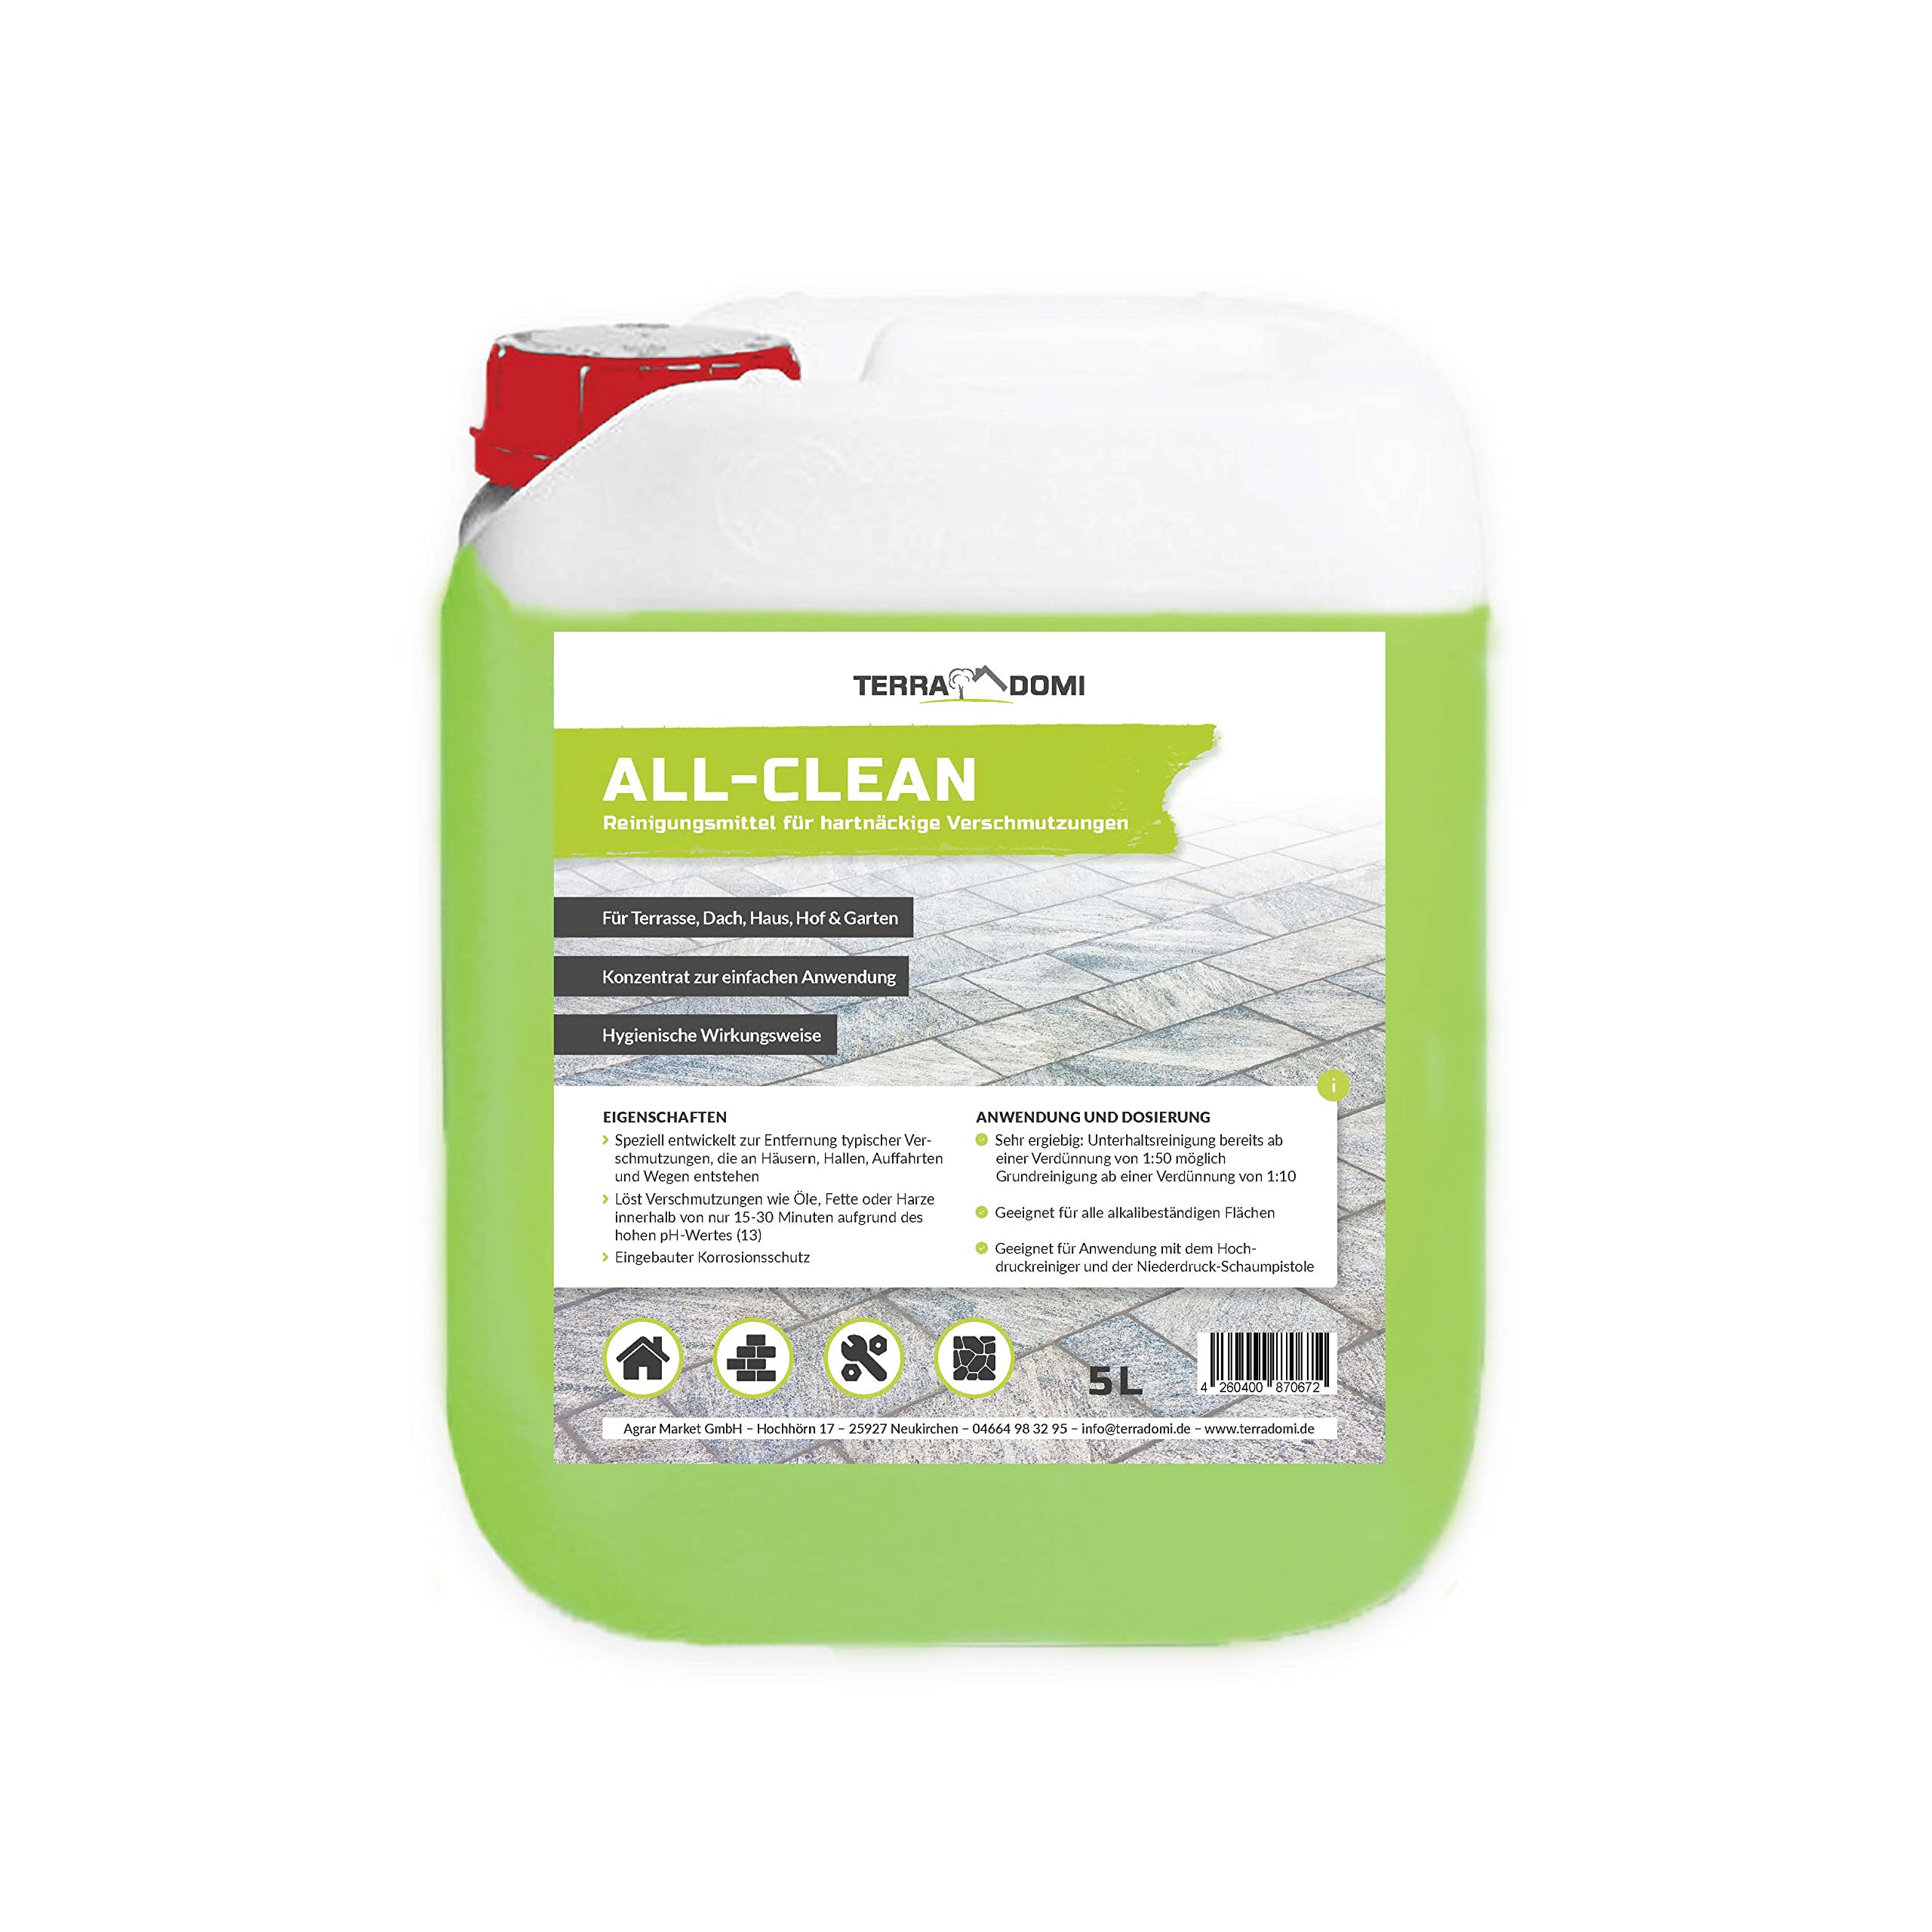 TerraDomi All-Clean, 5 L, Reinigungsmittel für hartnäckige Verschmutzungen, wirksamer Power-Reiniger für Terrasse, Dach, Haus, Hof & Garten, vielseitige Anwendung